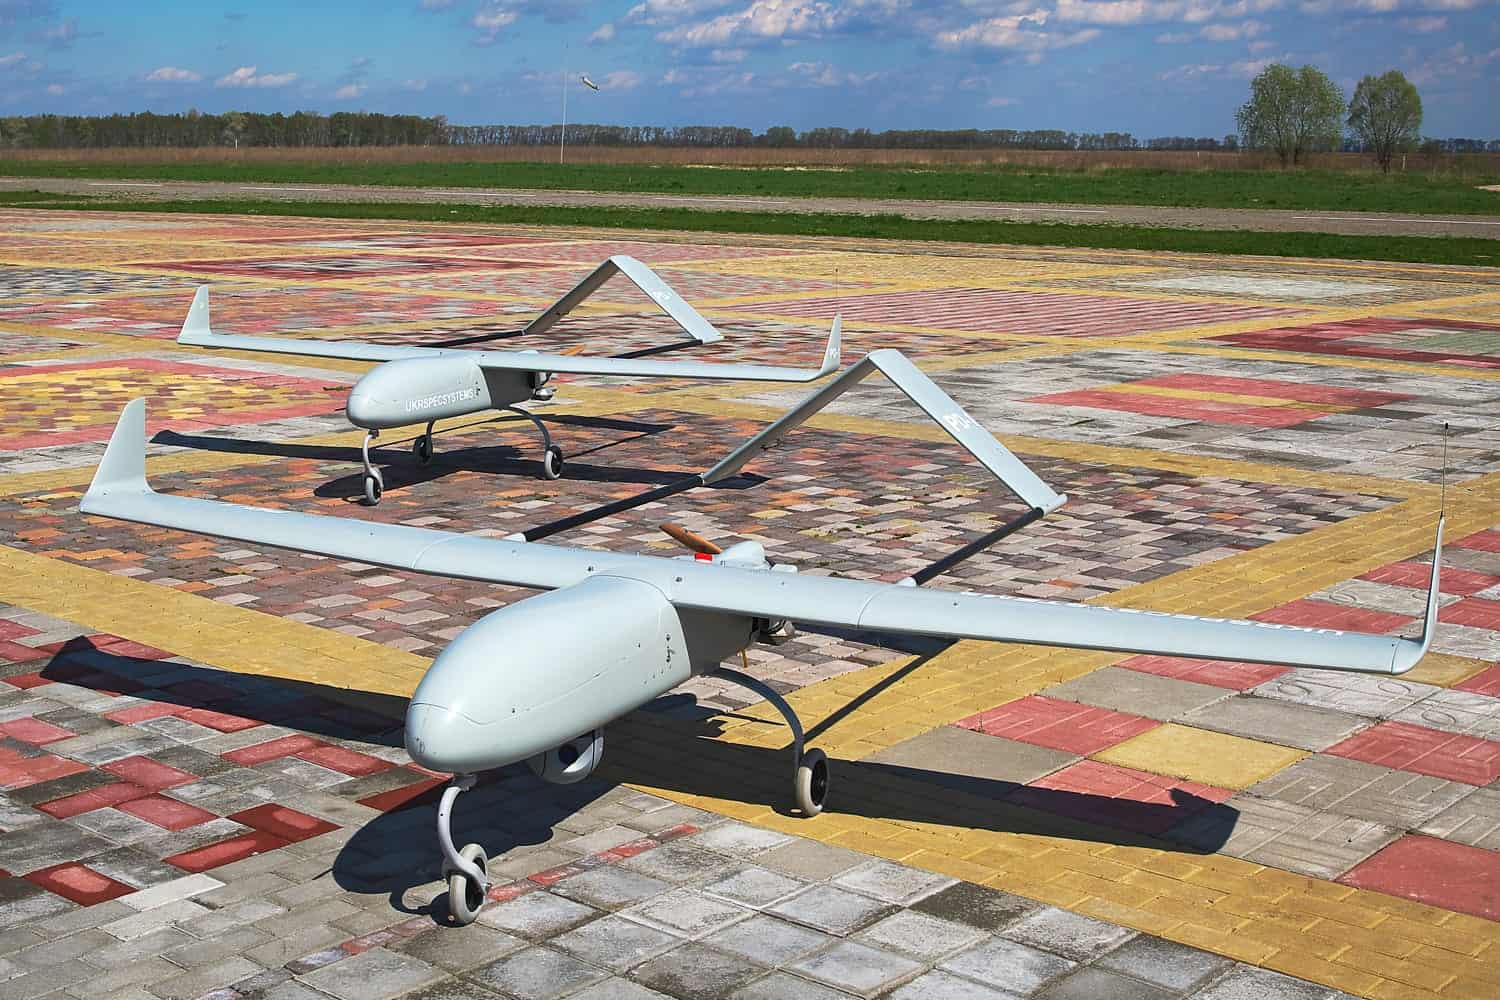 mini nano quadcopter drones with camera